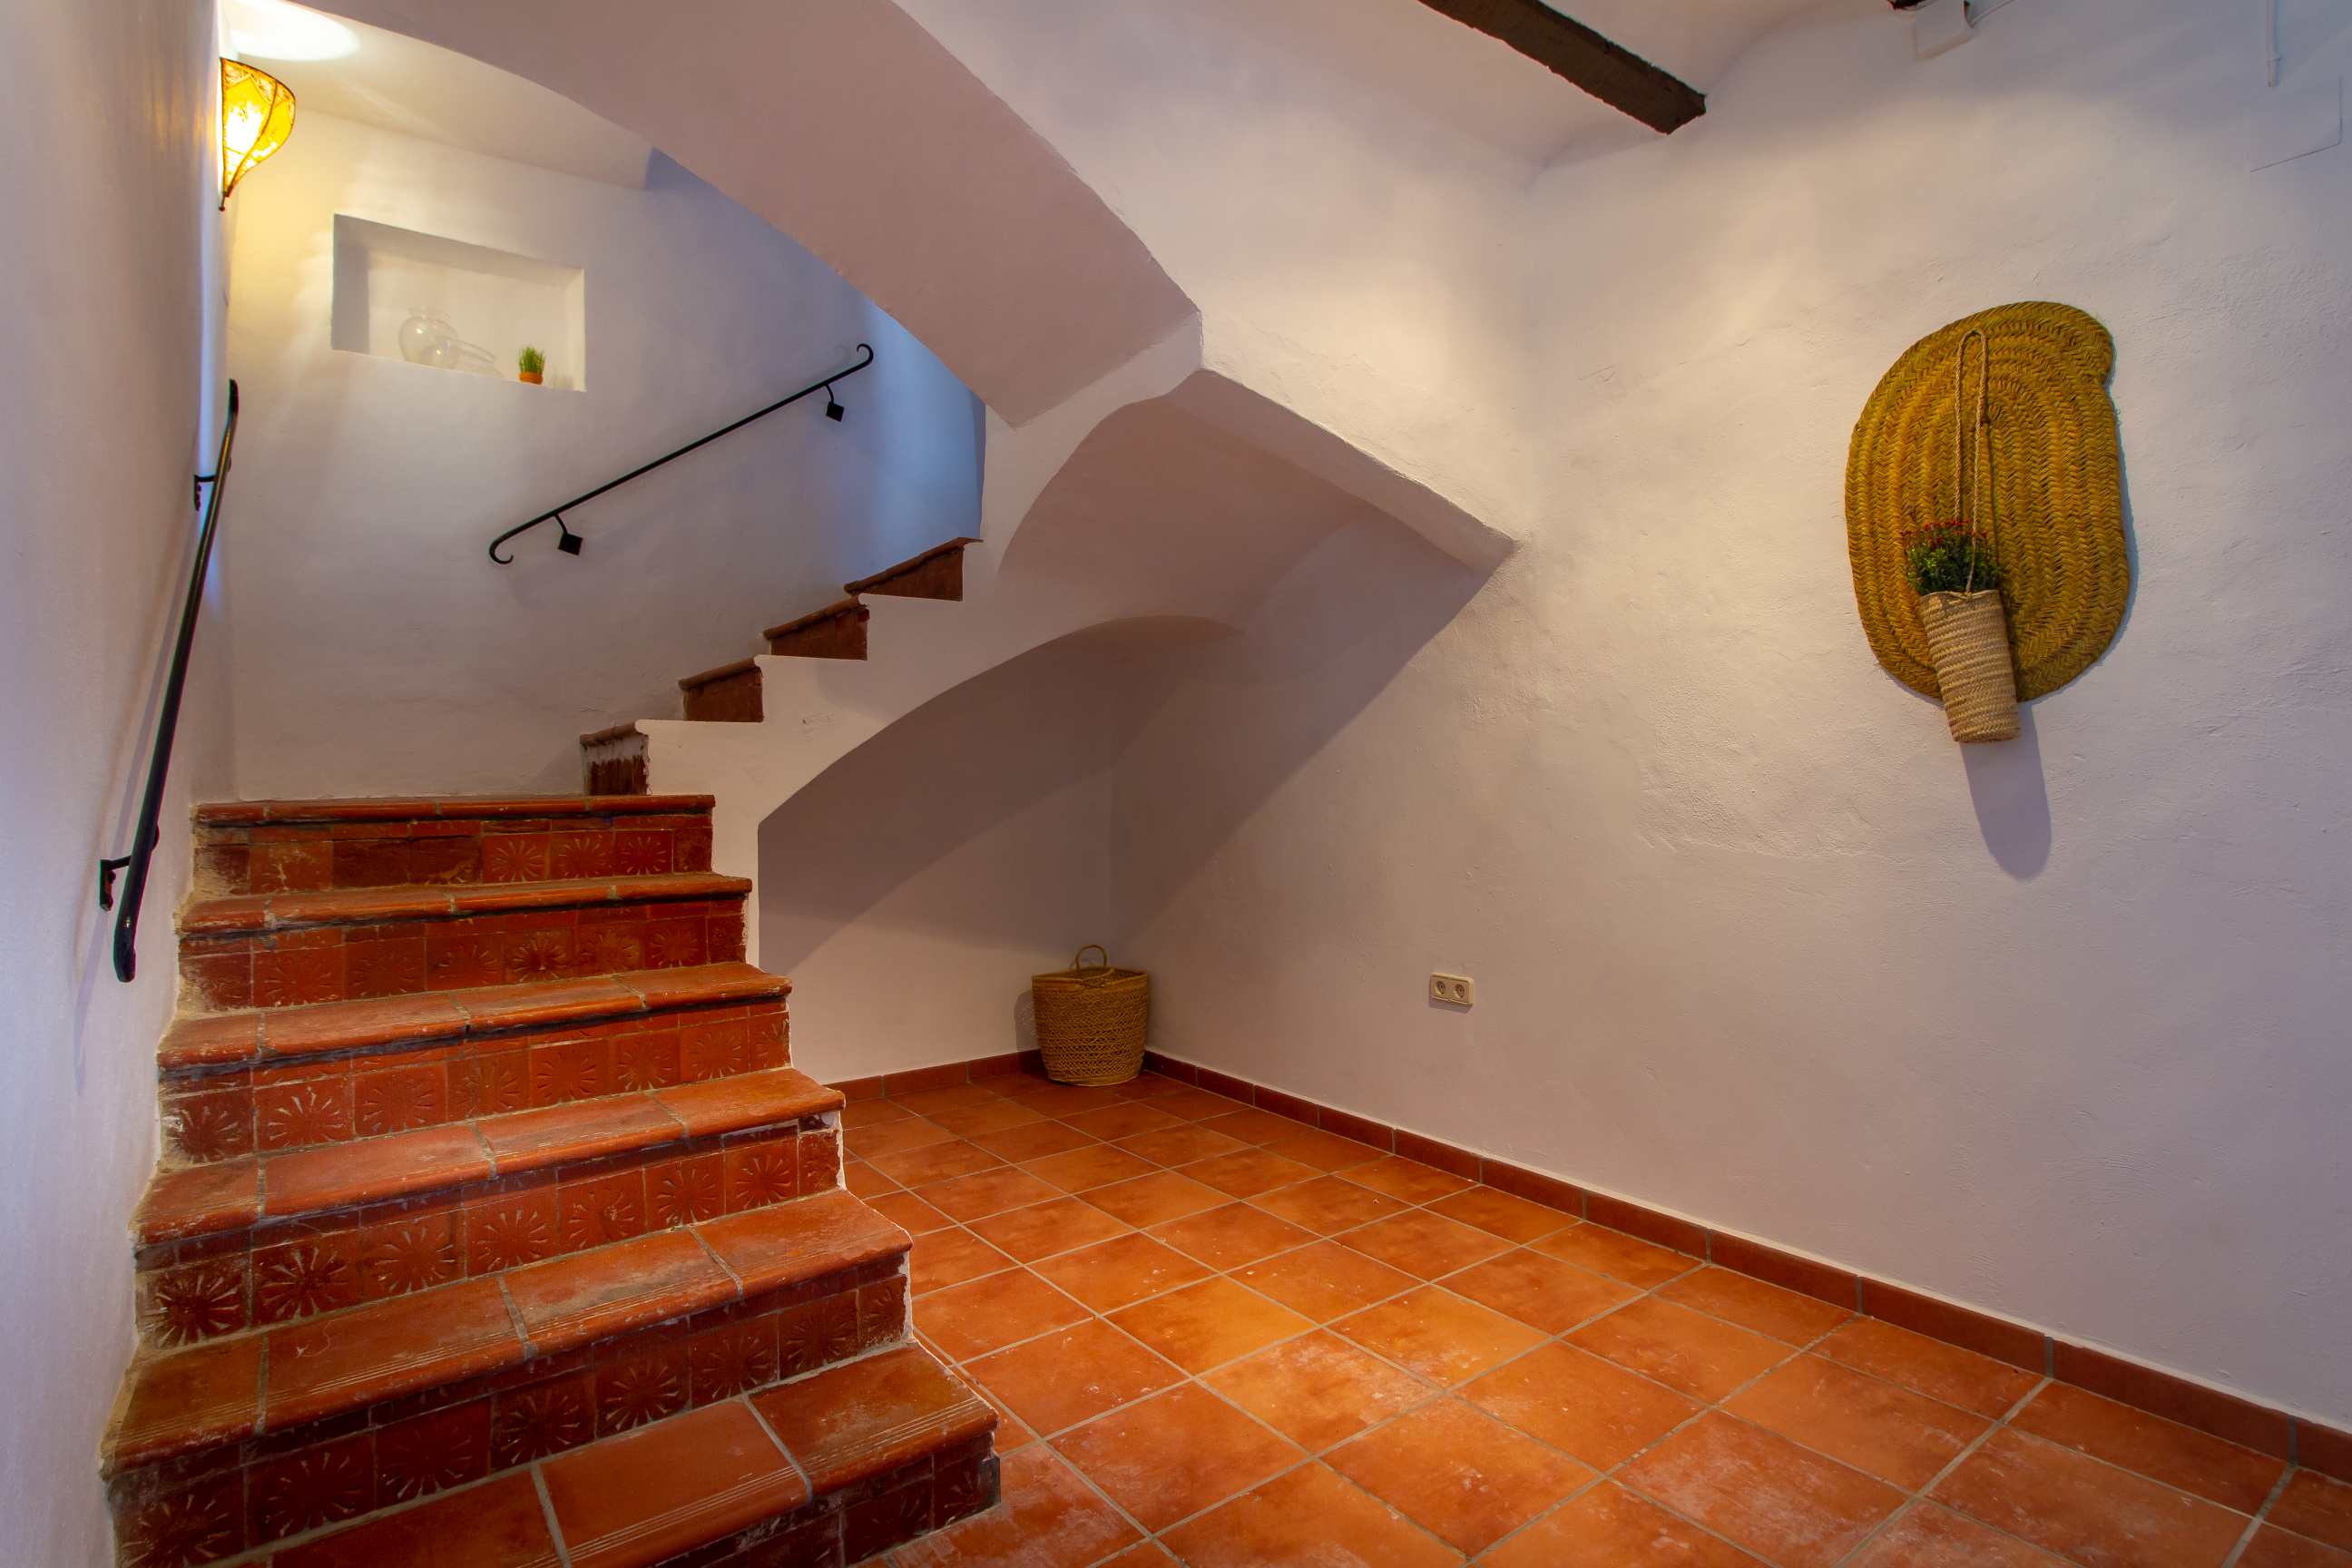 Encantadora Casa en el Casco Antiguo de Polop: Descubre su Historia y Encanto